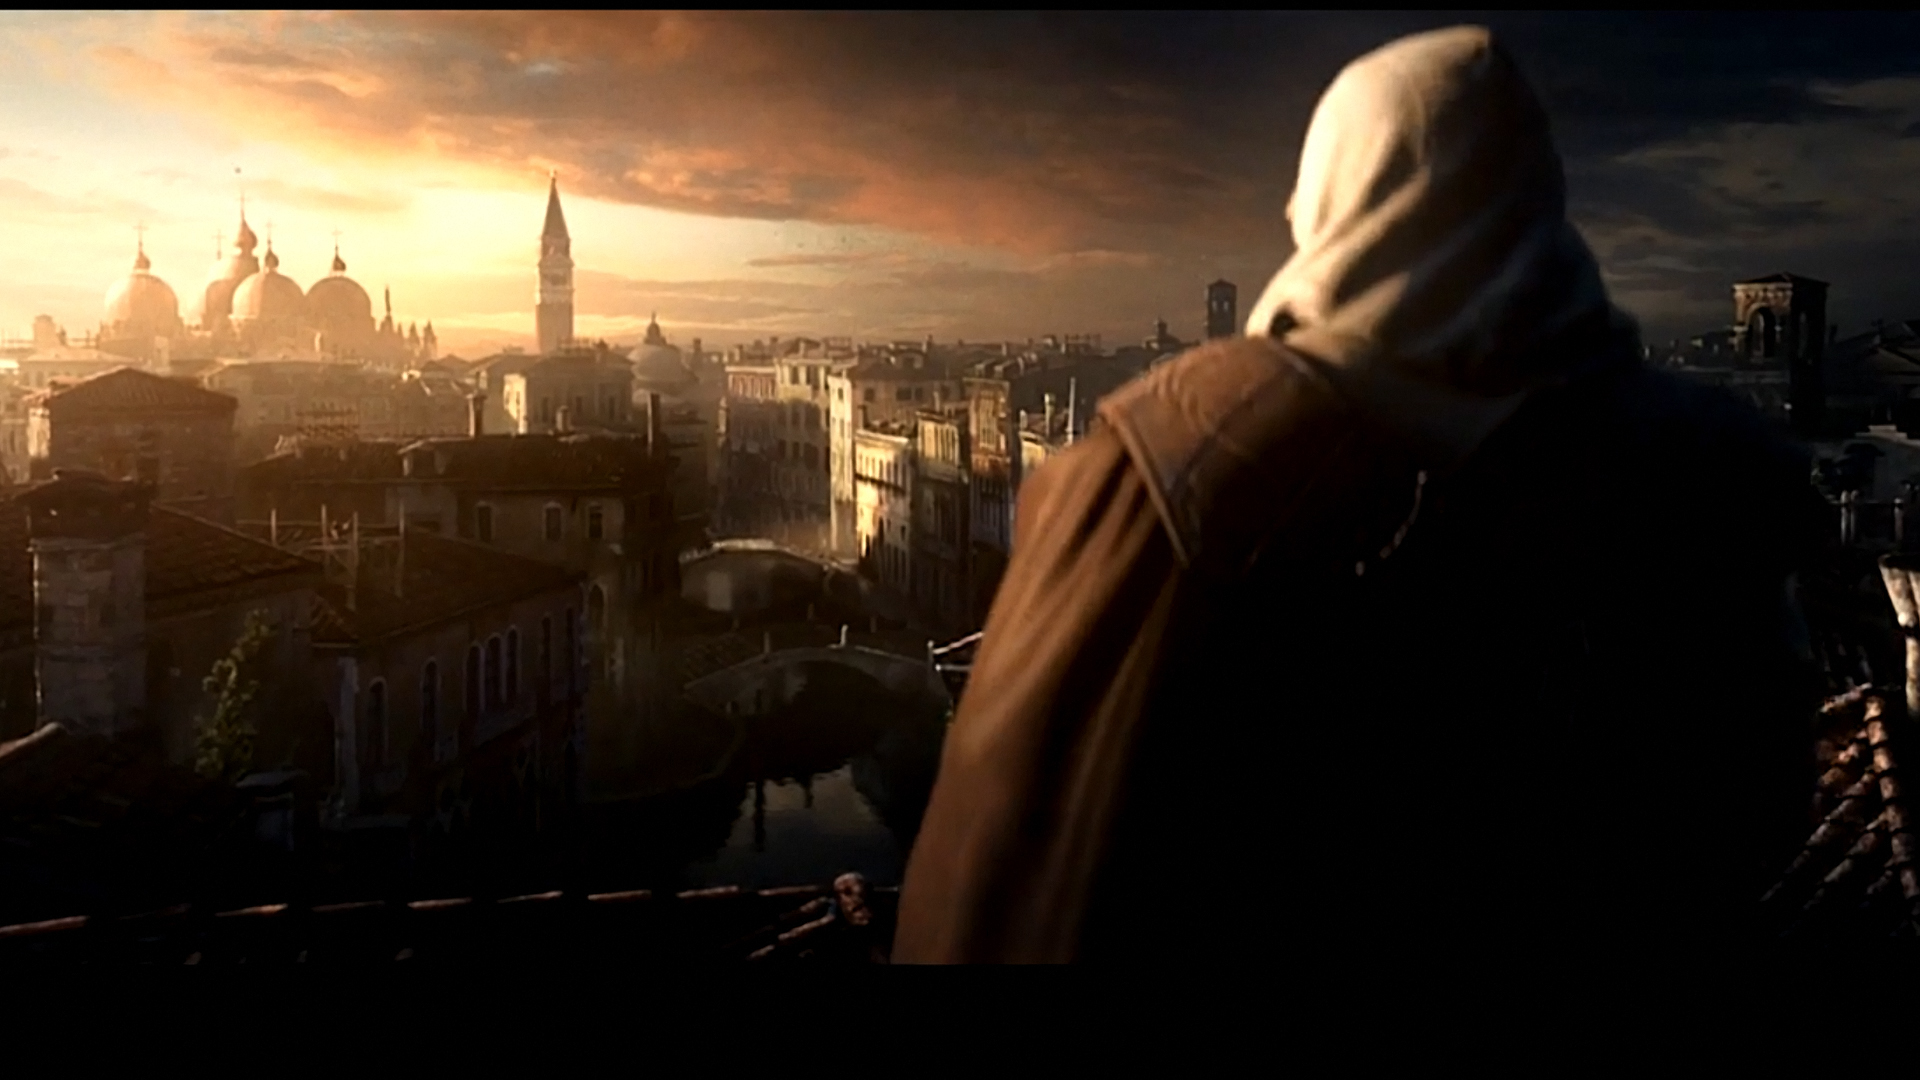 Assassins Creed - desktop wallpaper